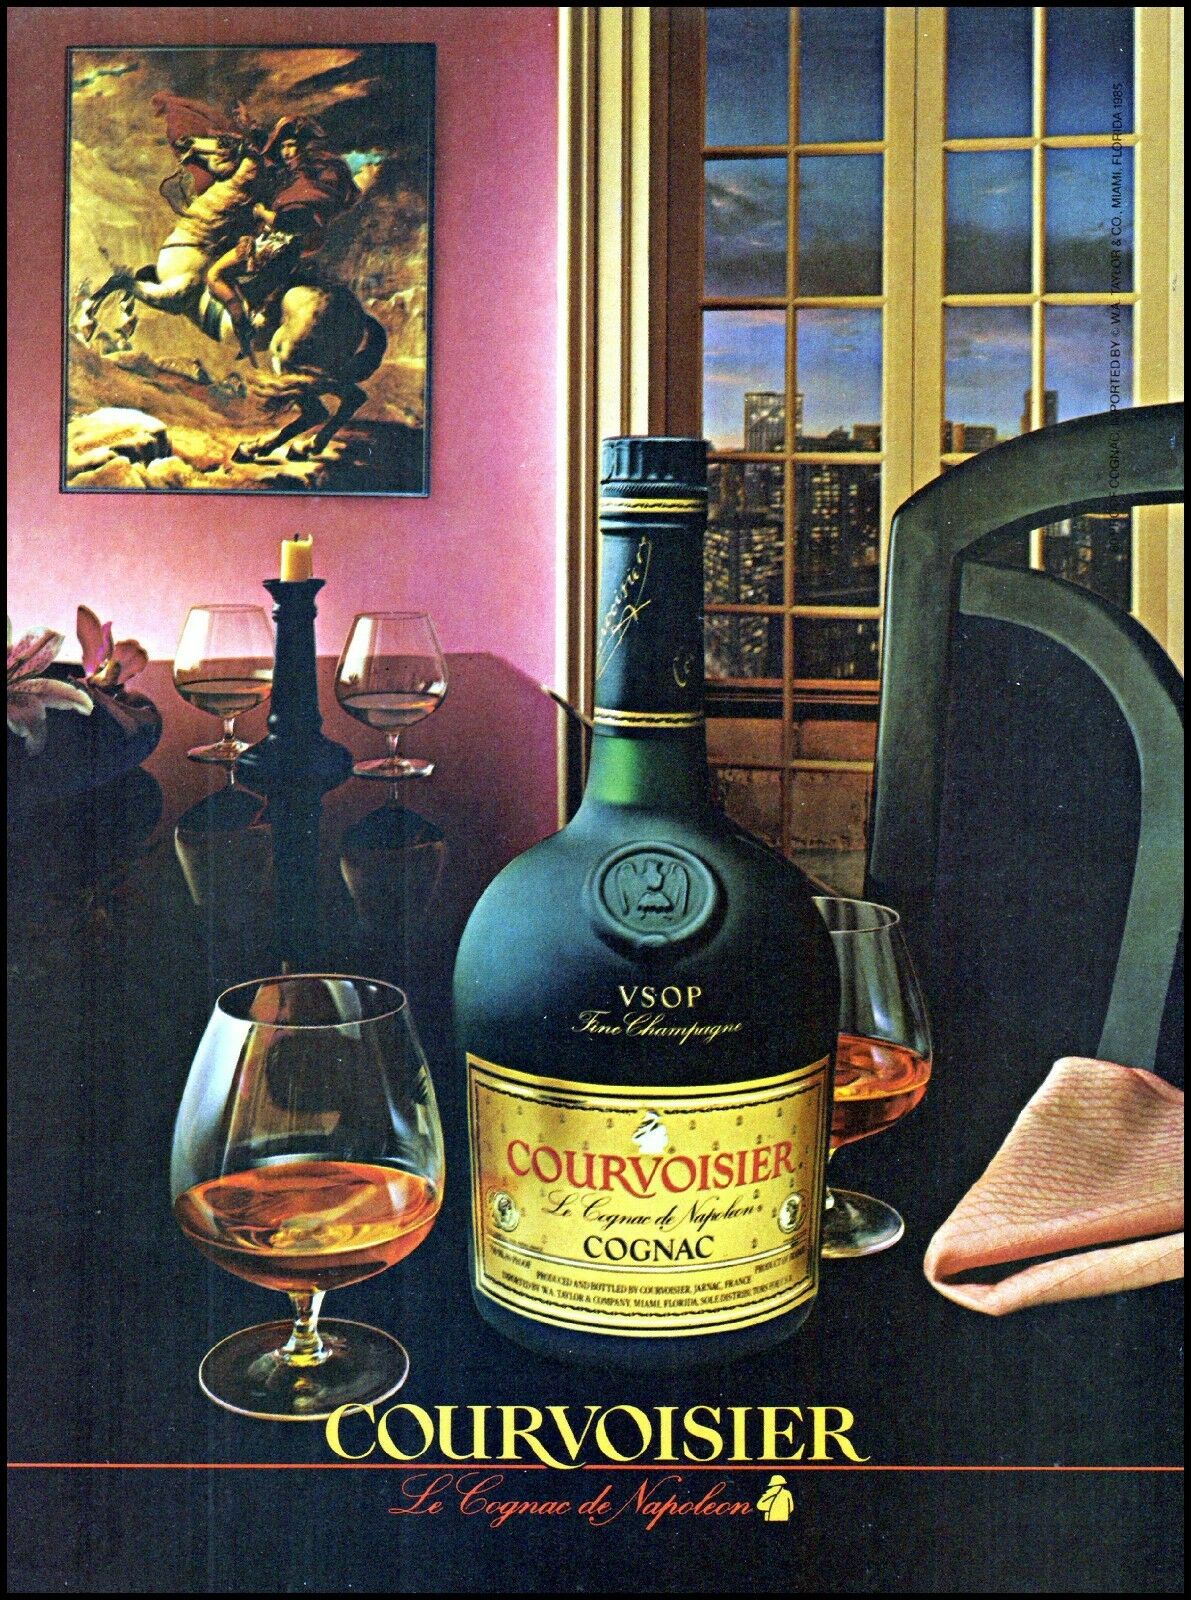 1985 Courvoisier Cognac Bottle City Window View Vintage Photo Print Ad Ads15